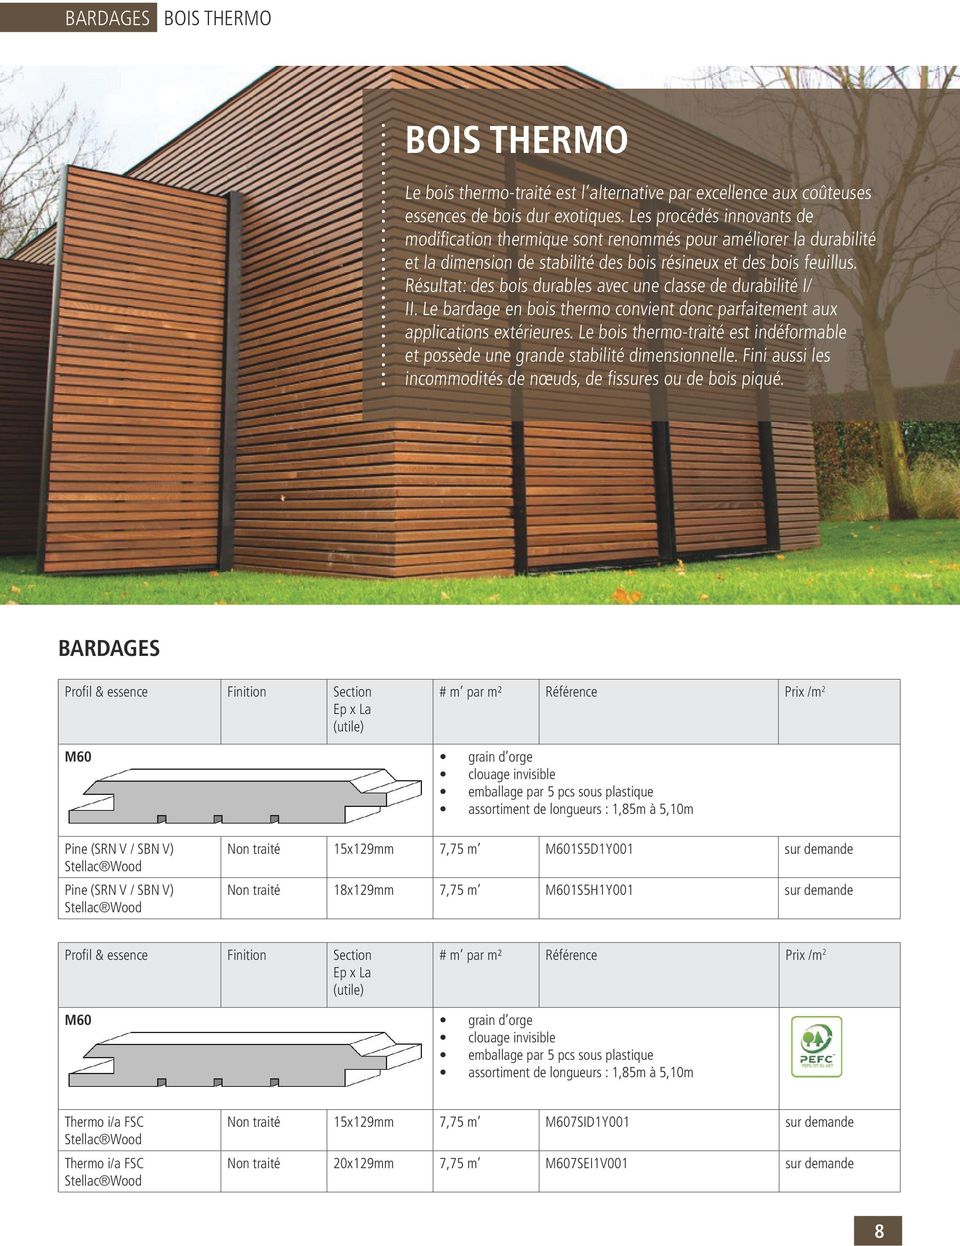 Résultat: des bois durables avec une classe de durabilité I/ II. Le bardage en bois thermo convient donc parfaitement aux applications extérieures.